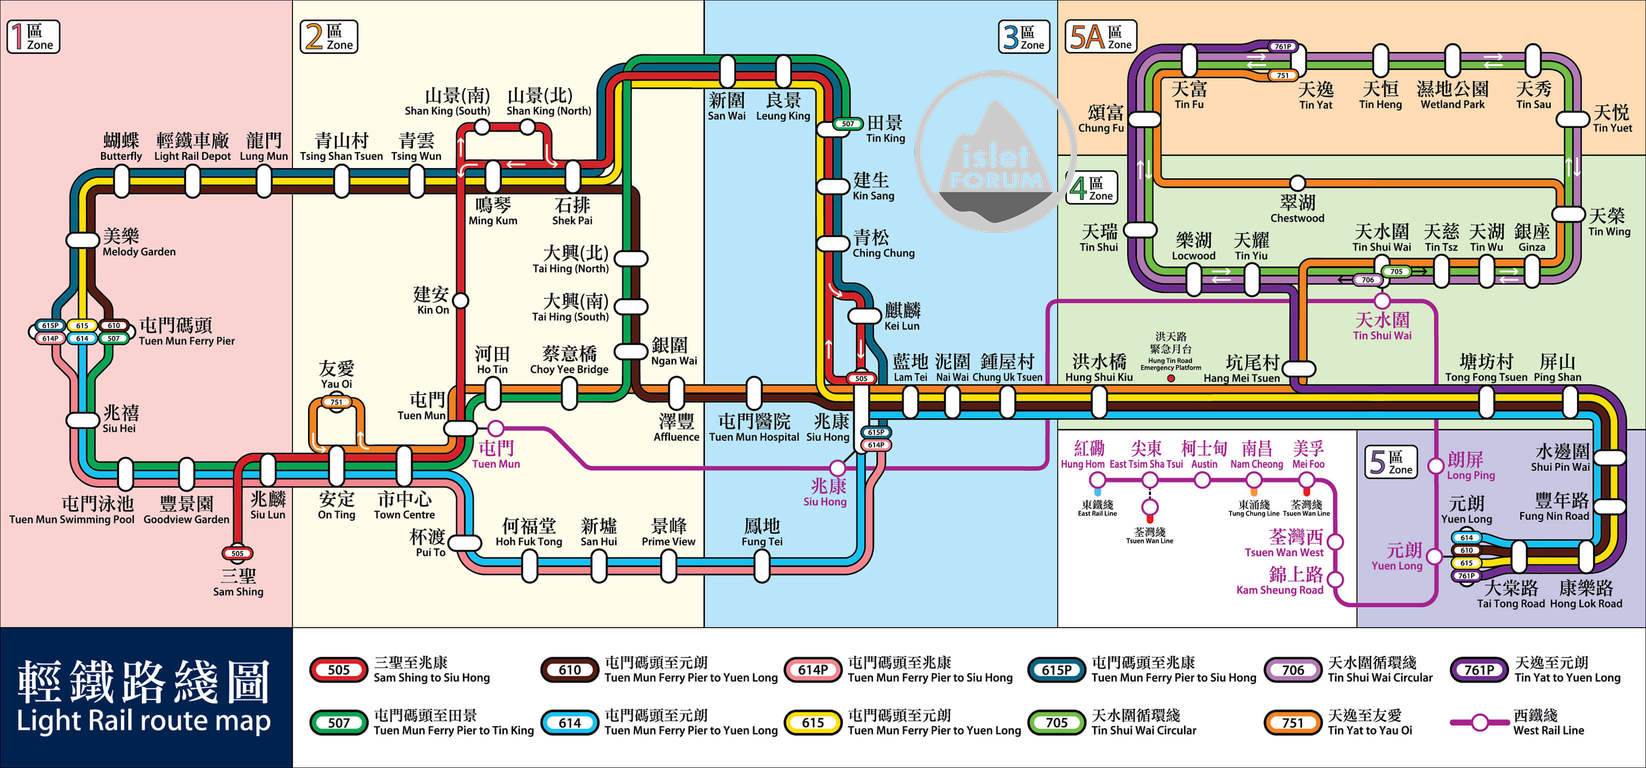 輕鐵路線圖 light rail route map.jpg